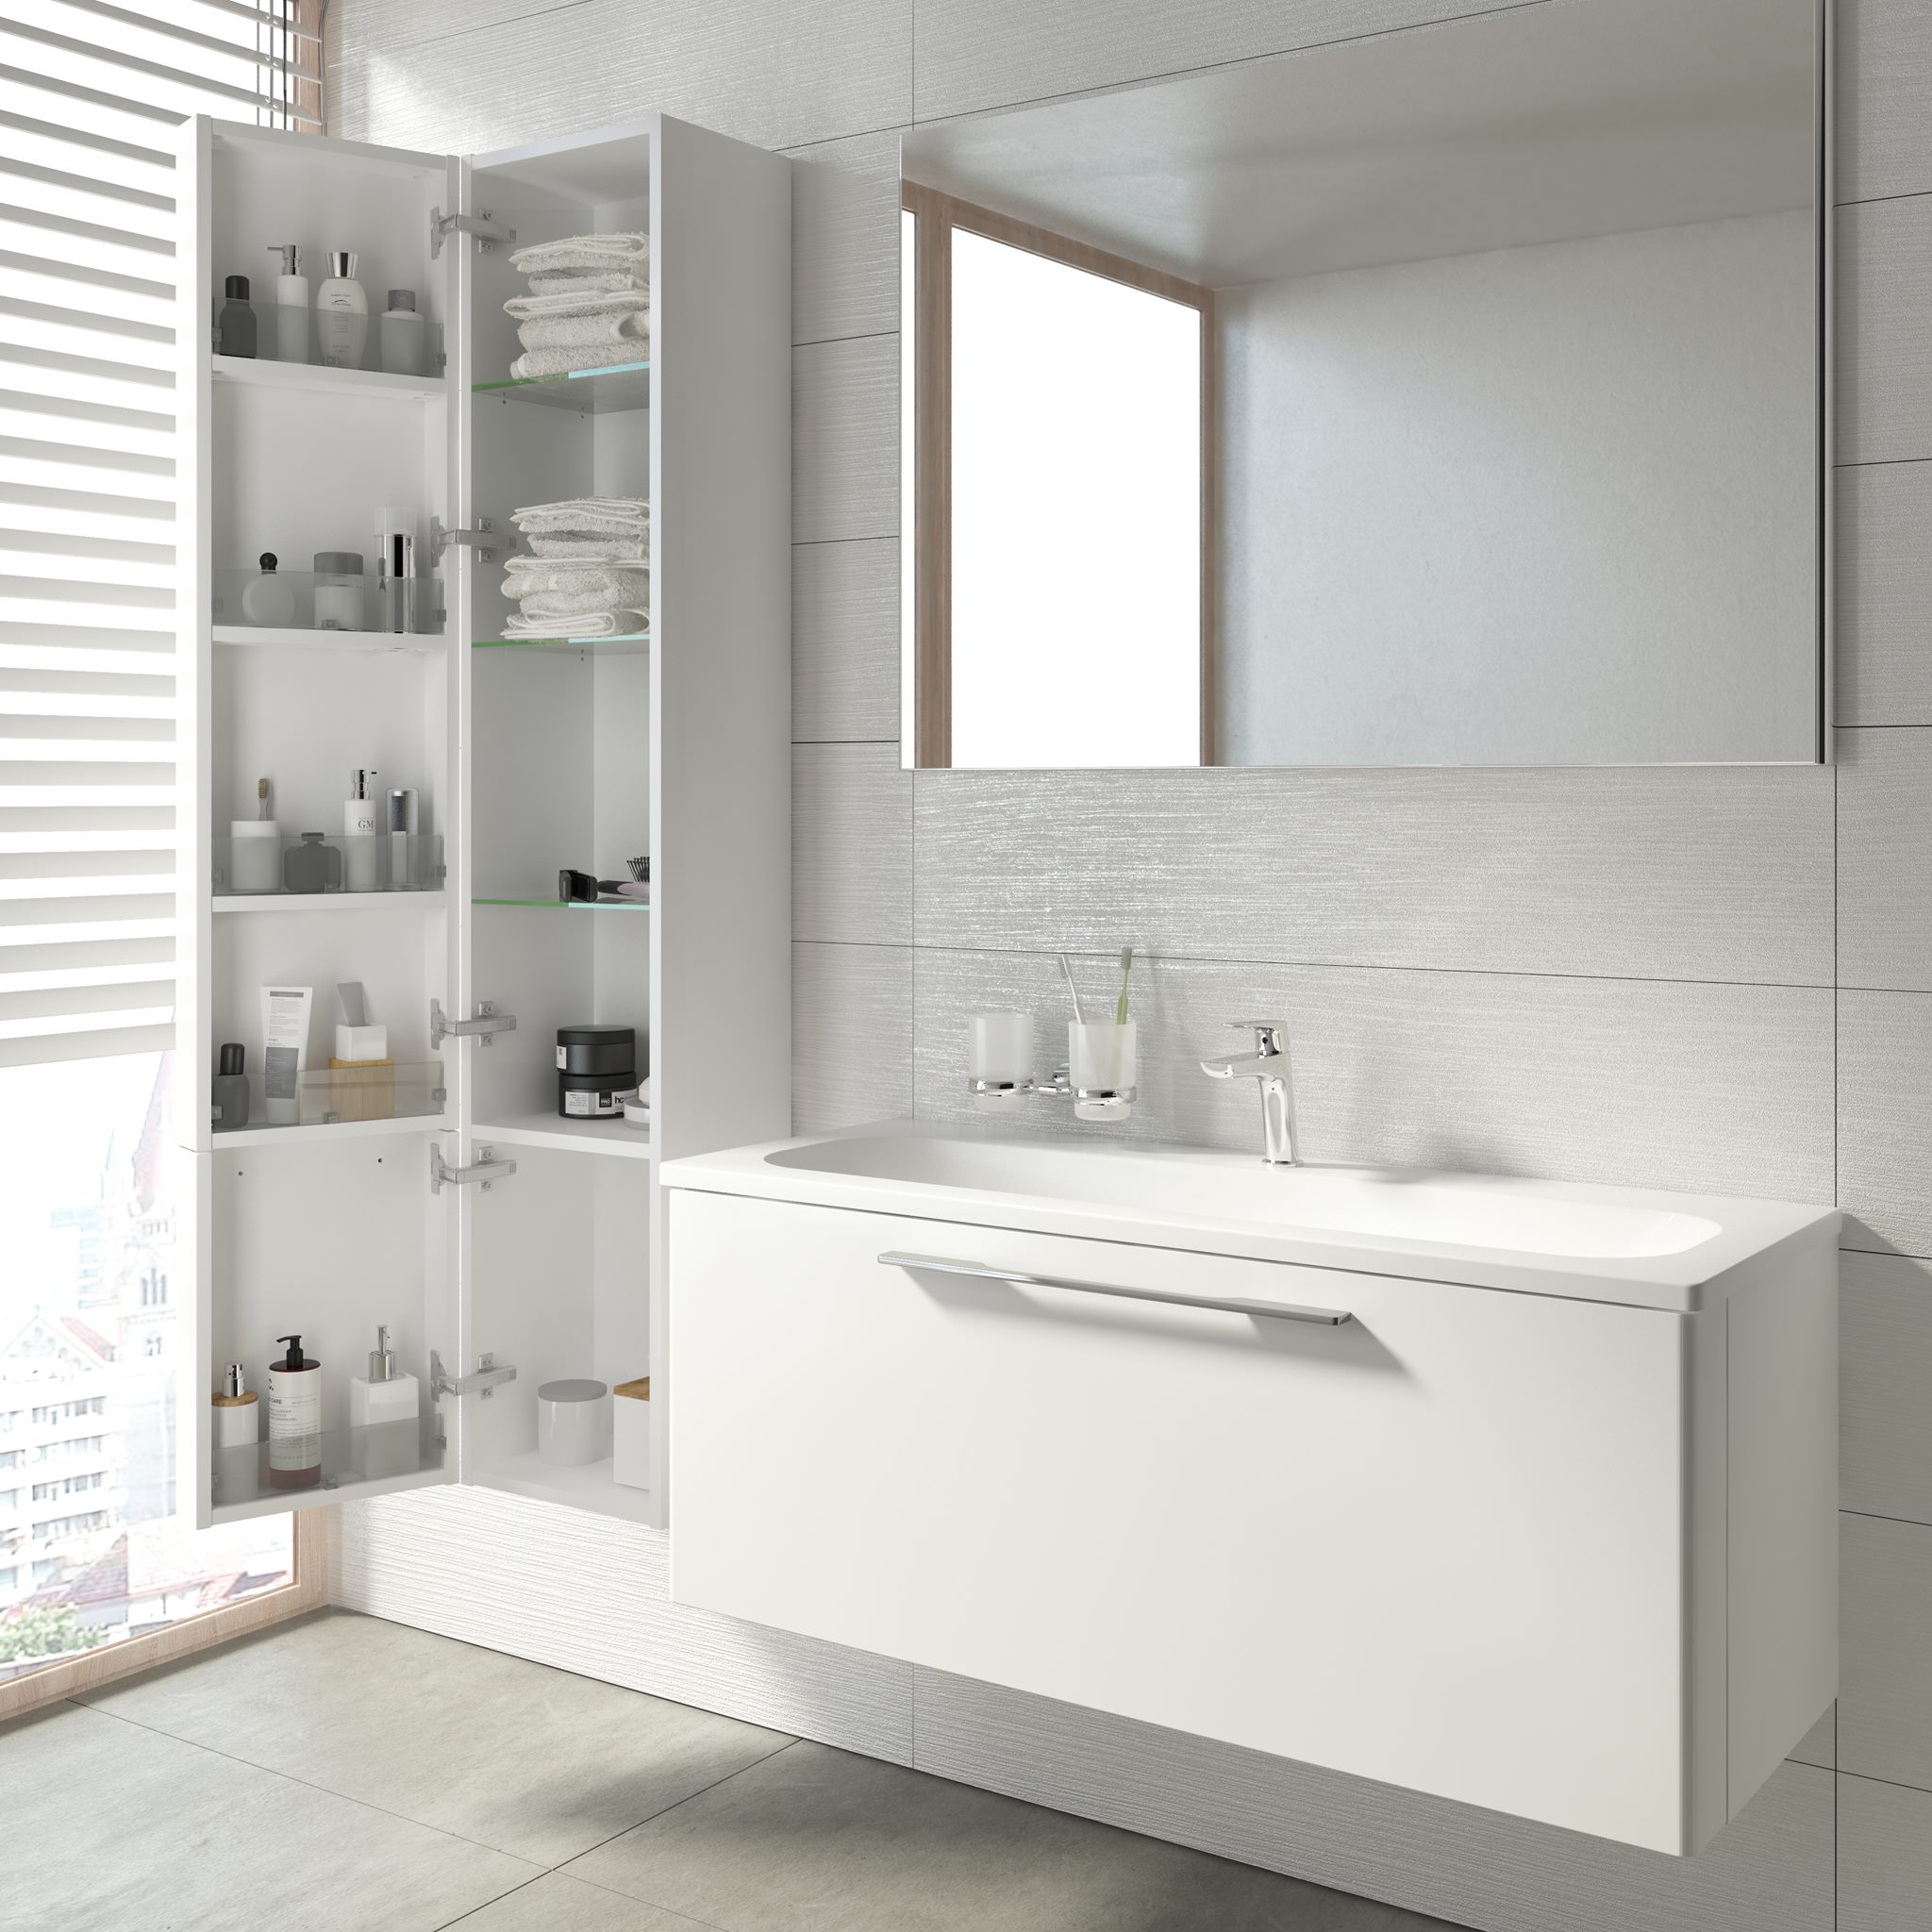 A polcoknak és az ajtóra szerelt bőséges tárolóegységeknek köszönhetően jól strukturálható a fürdőszoba kiegészítők egész sora.